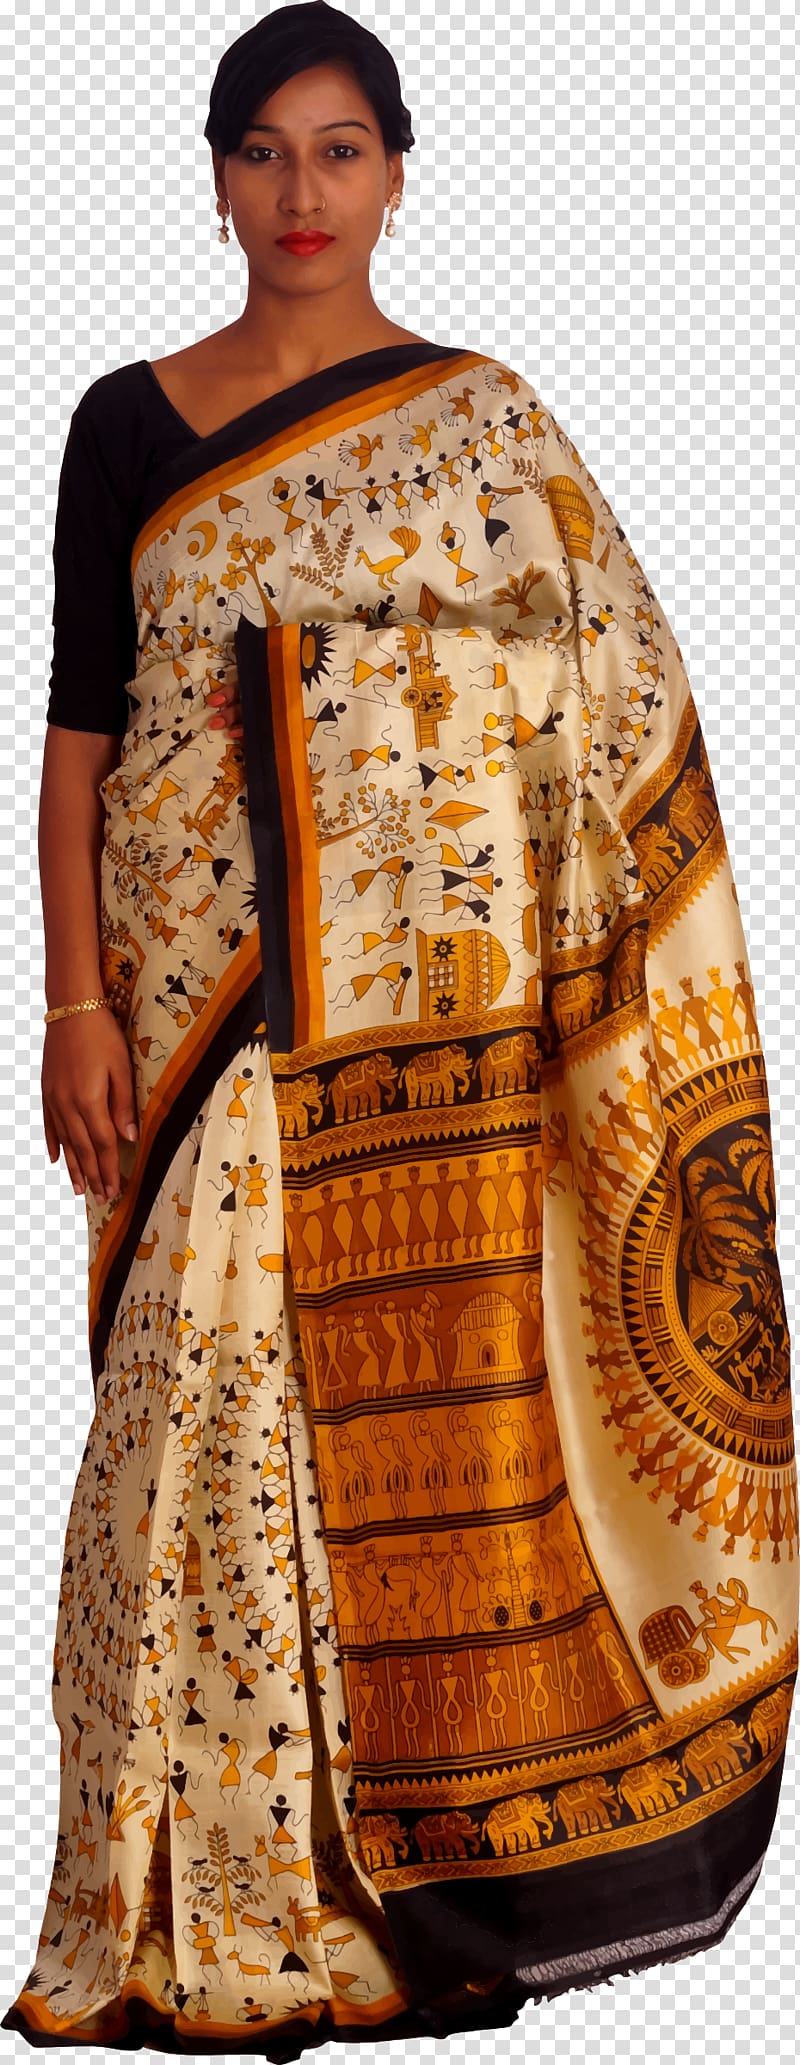 Sari Silk Clothing Paithani Designer, saree transparent background PNG clipart